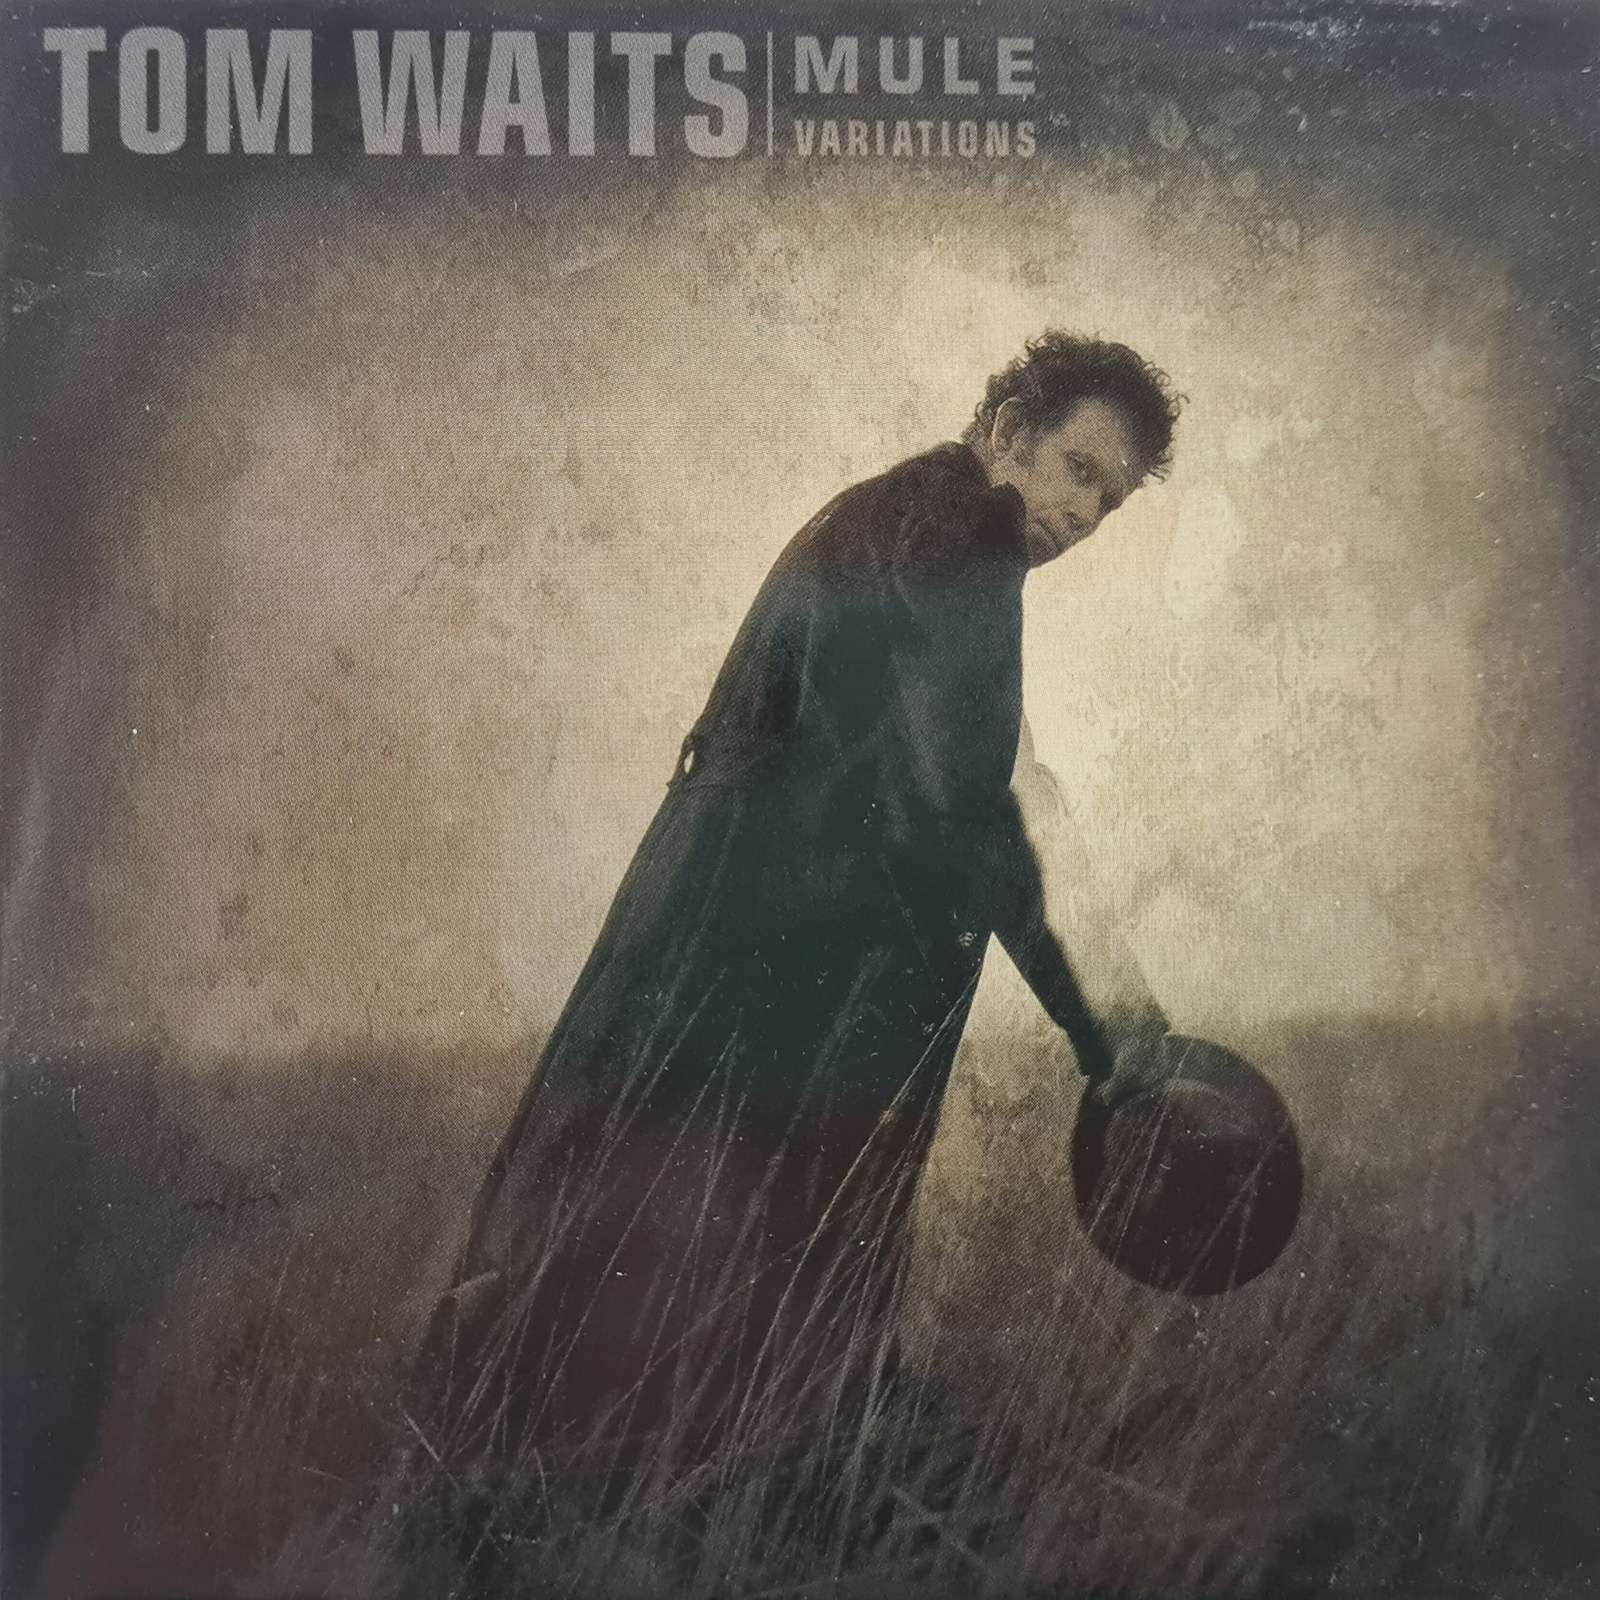 Tom Waits - Mule Variations (CD)